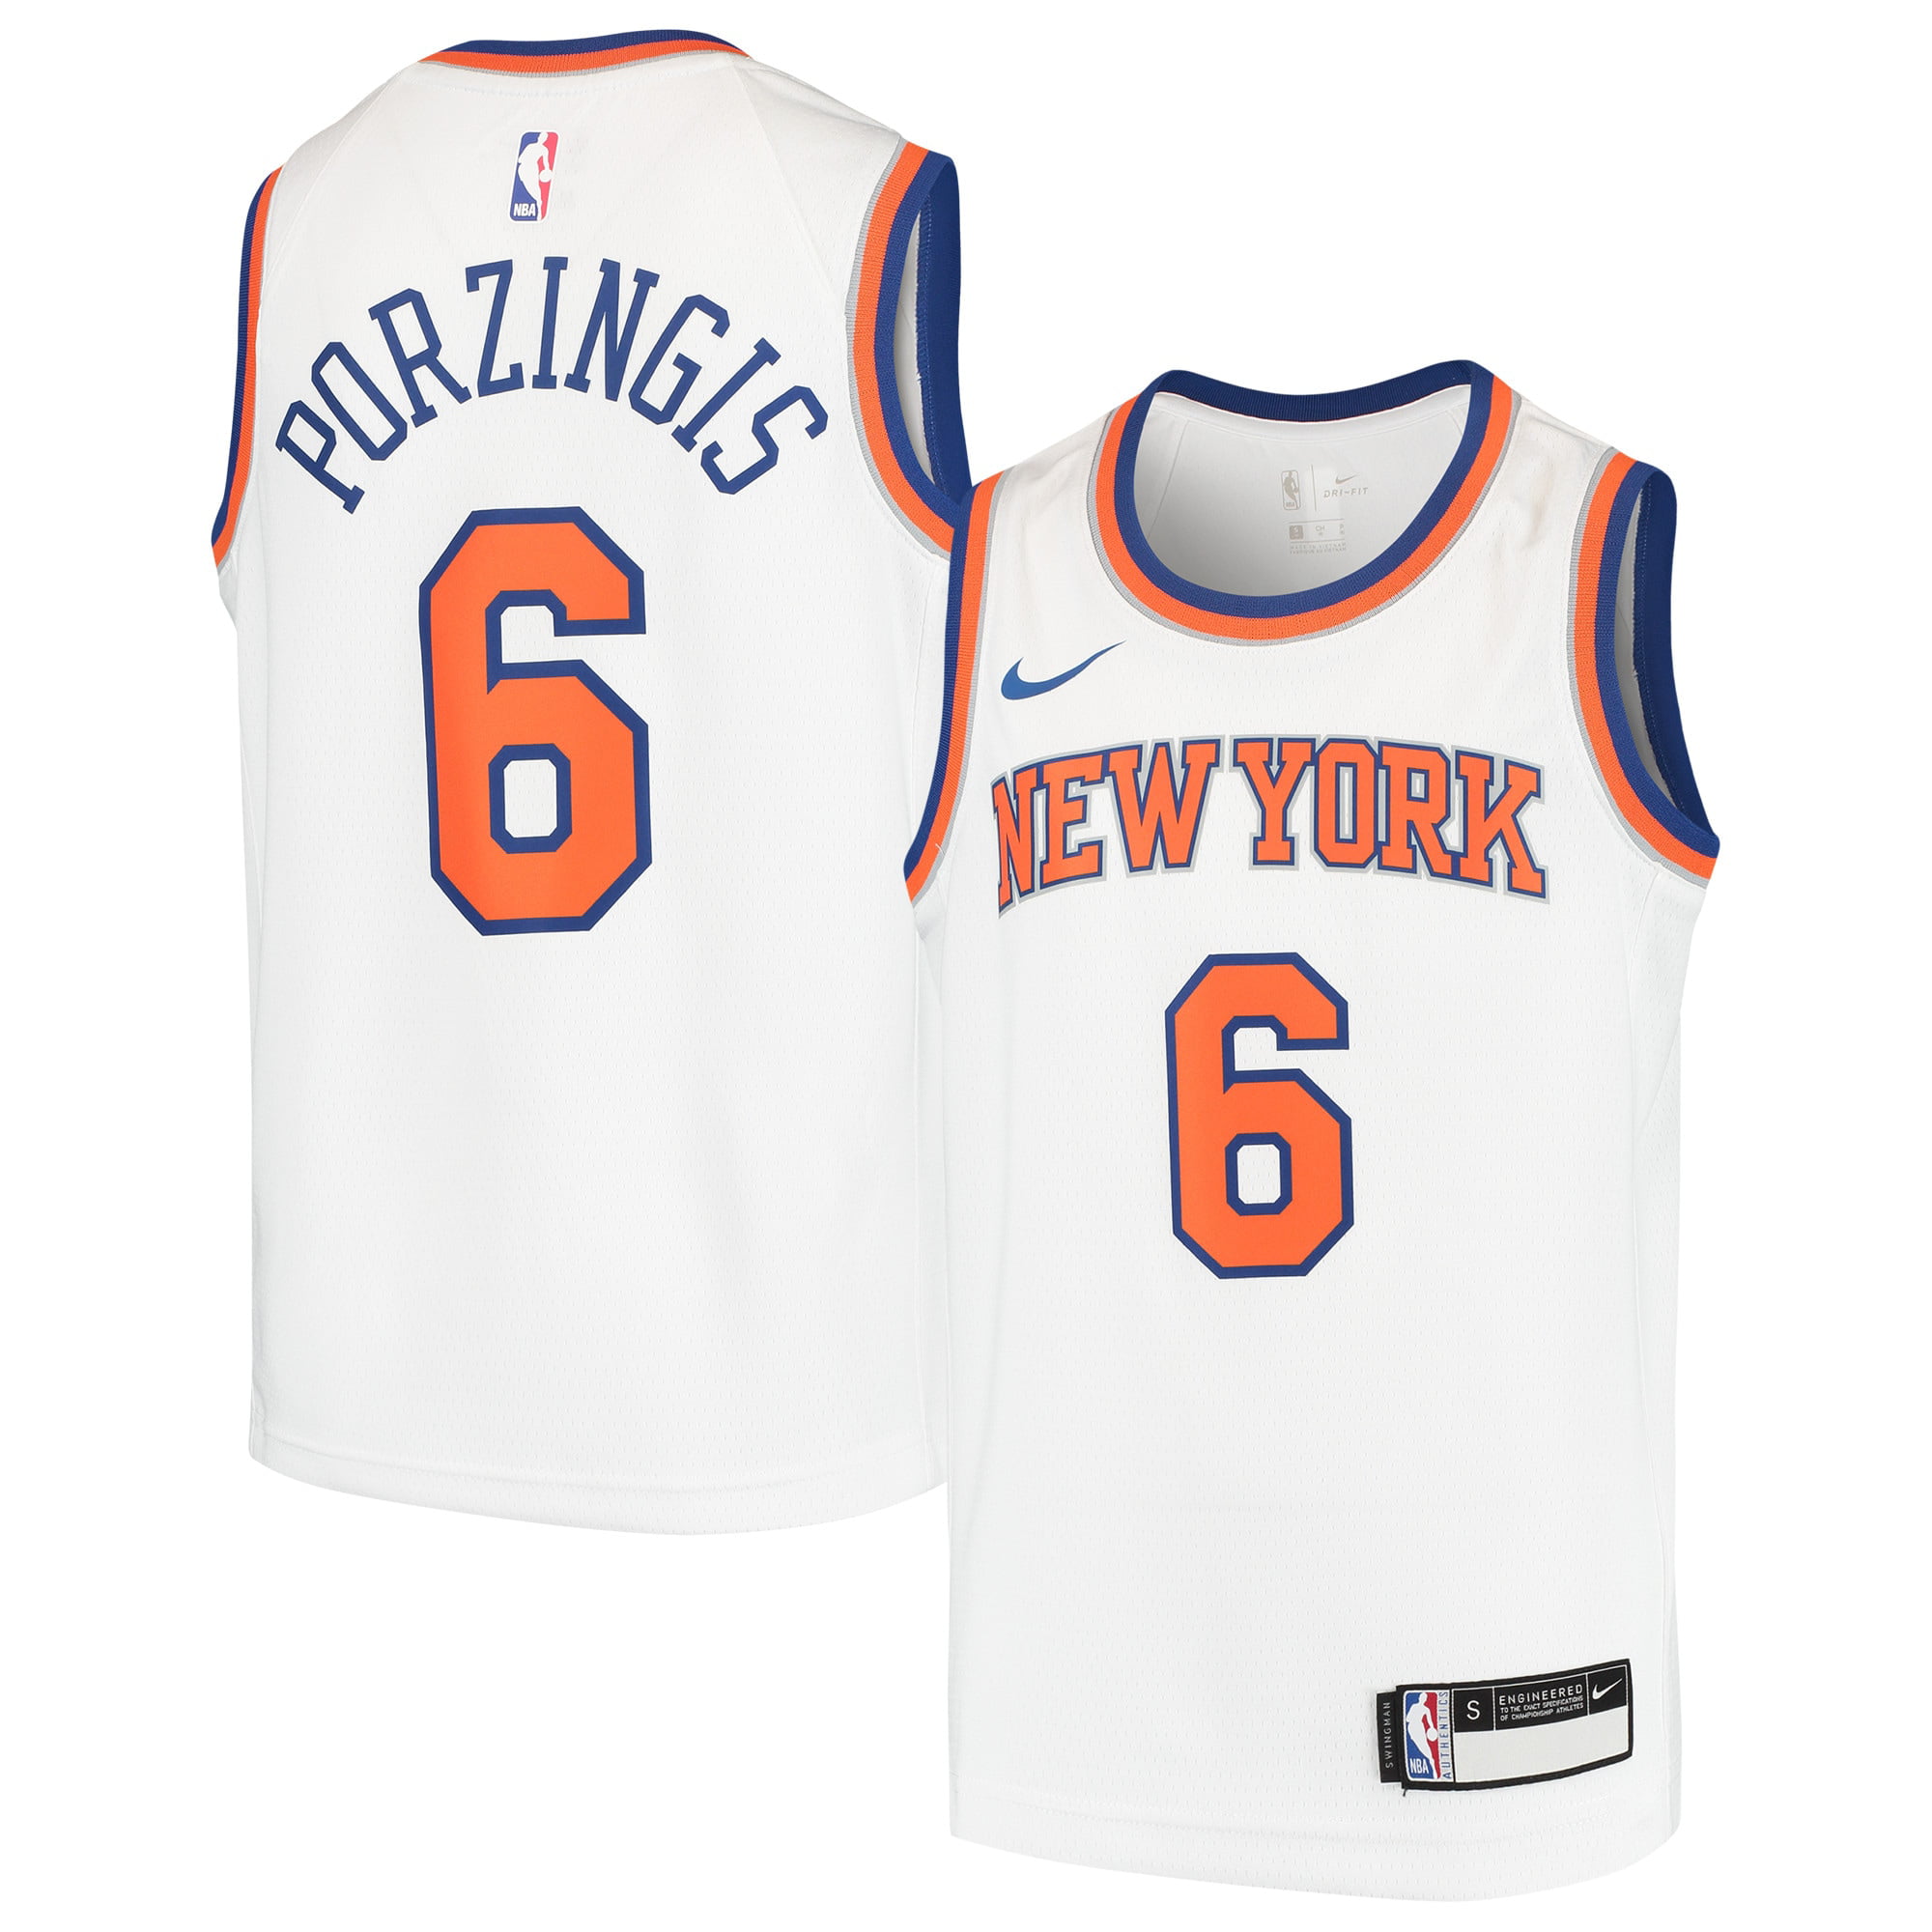 York Knicks Nike Youth Swingman Jersey 